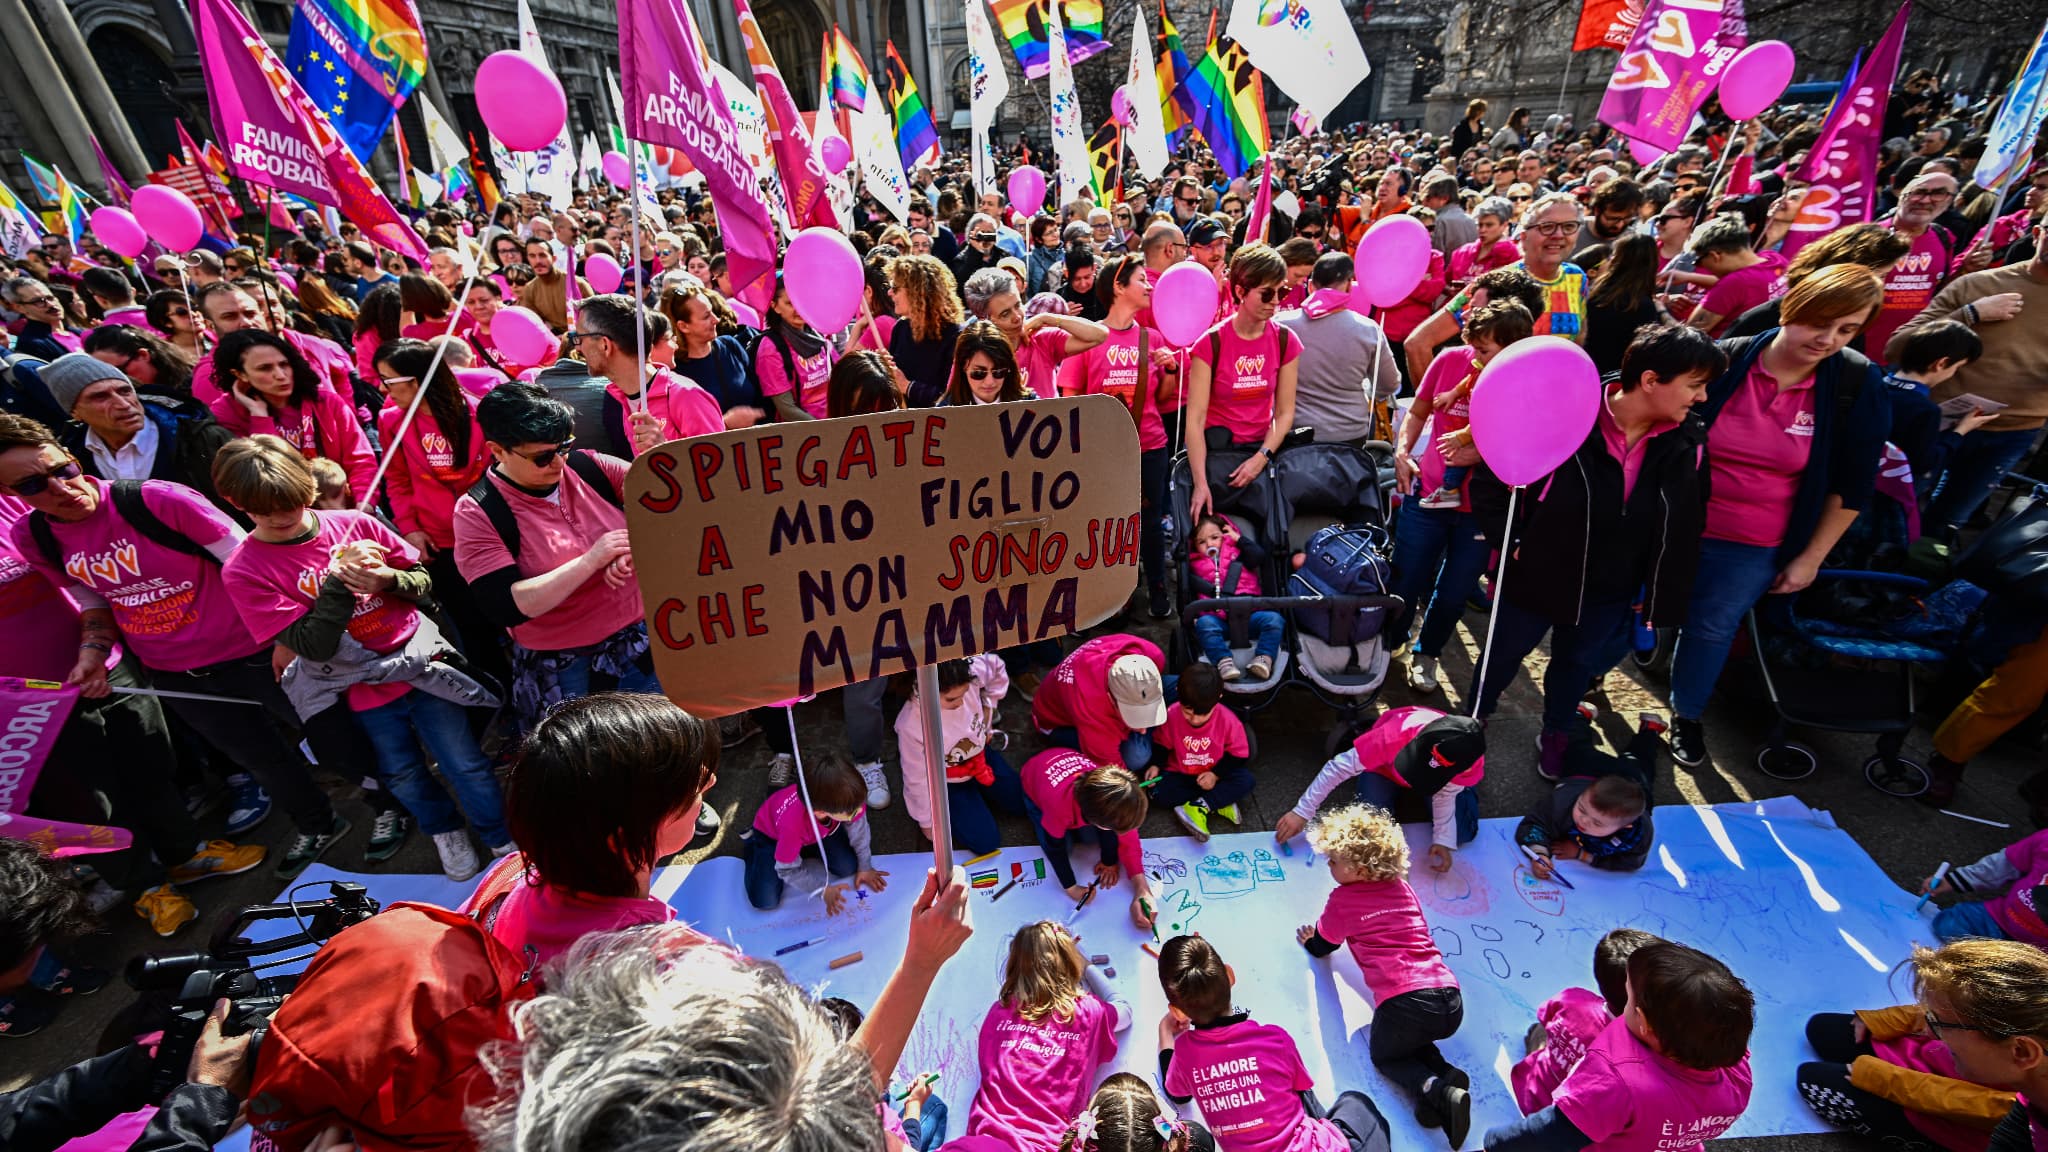 le gouvernement Meloni veut restritreindre les droits desparents omosessualità, espressione à Milan